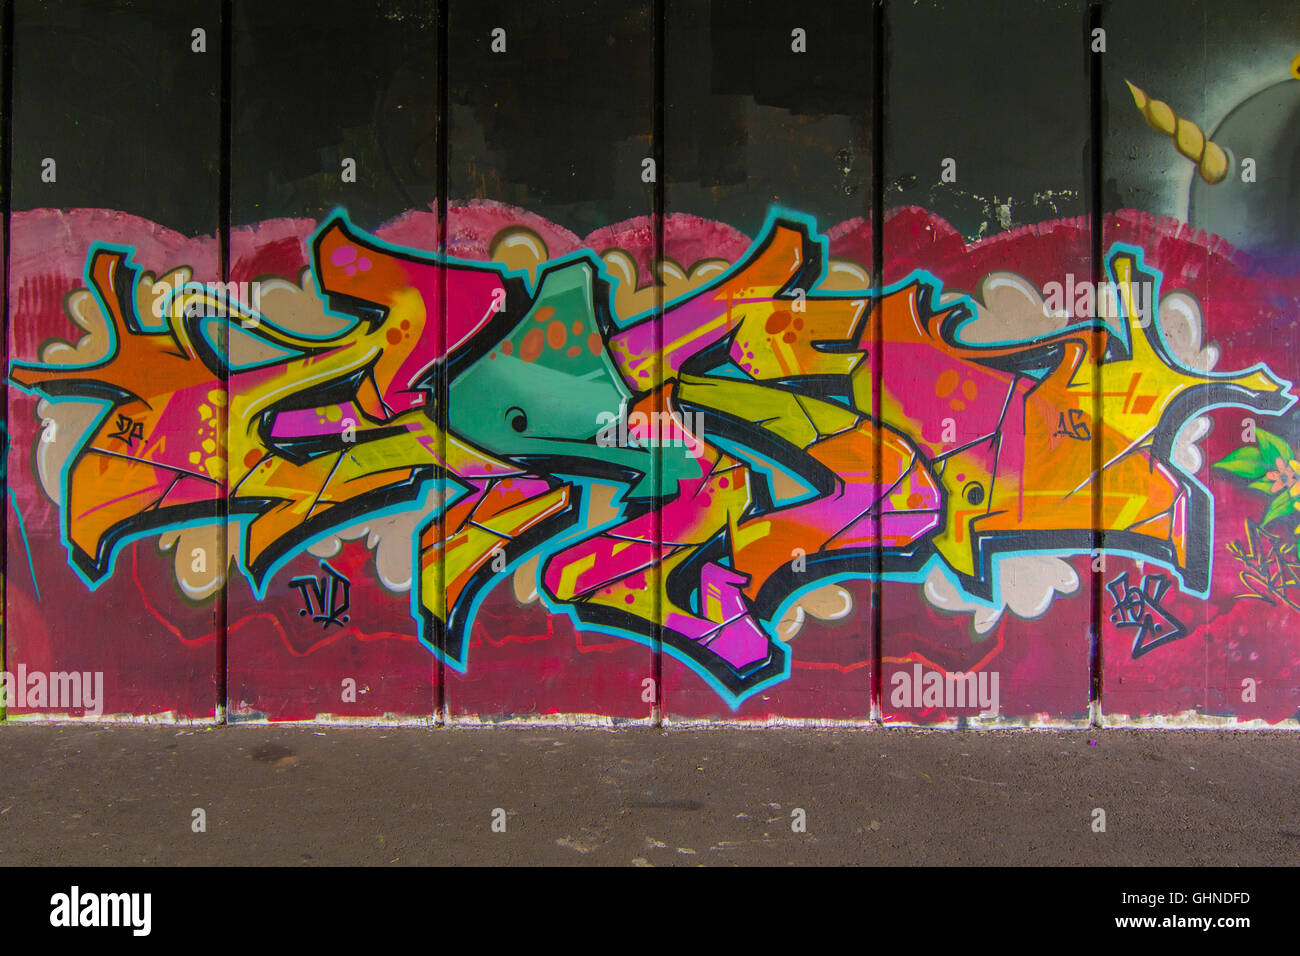 Pièce Graffiti Style sauvage dynamique pulvérisé sur le passage souterrain en béton Banque D'Images